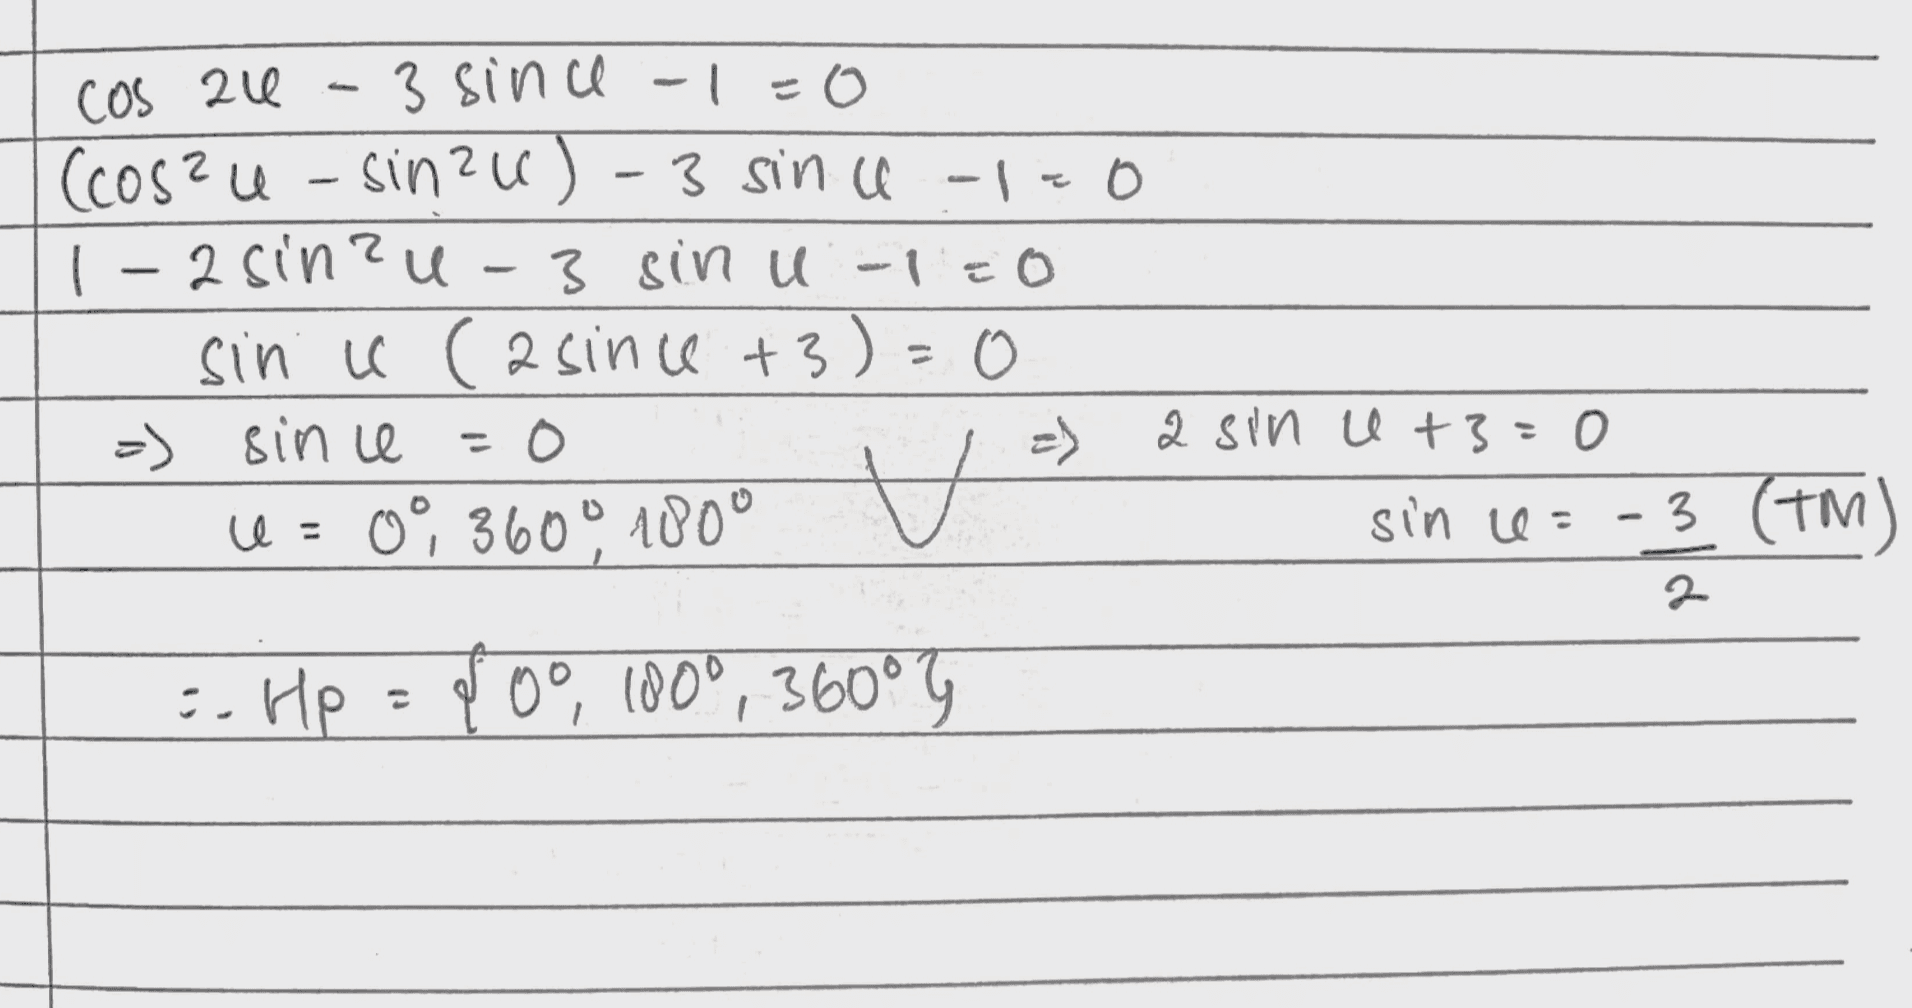 cos zu - - 3 since -1=0 (cos?u- sinzu) - 3 sin u-1.0 1-2 sine u 3 sinu -1=0 sin ll (asince +3)=0 =) since = 0 -) a sin u +3=0 = 0360°. 1000 H sin e :- HP = 100, 1800, 360° 3 (TM) - 2 